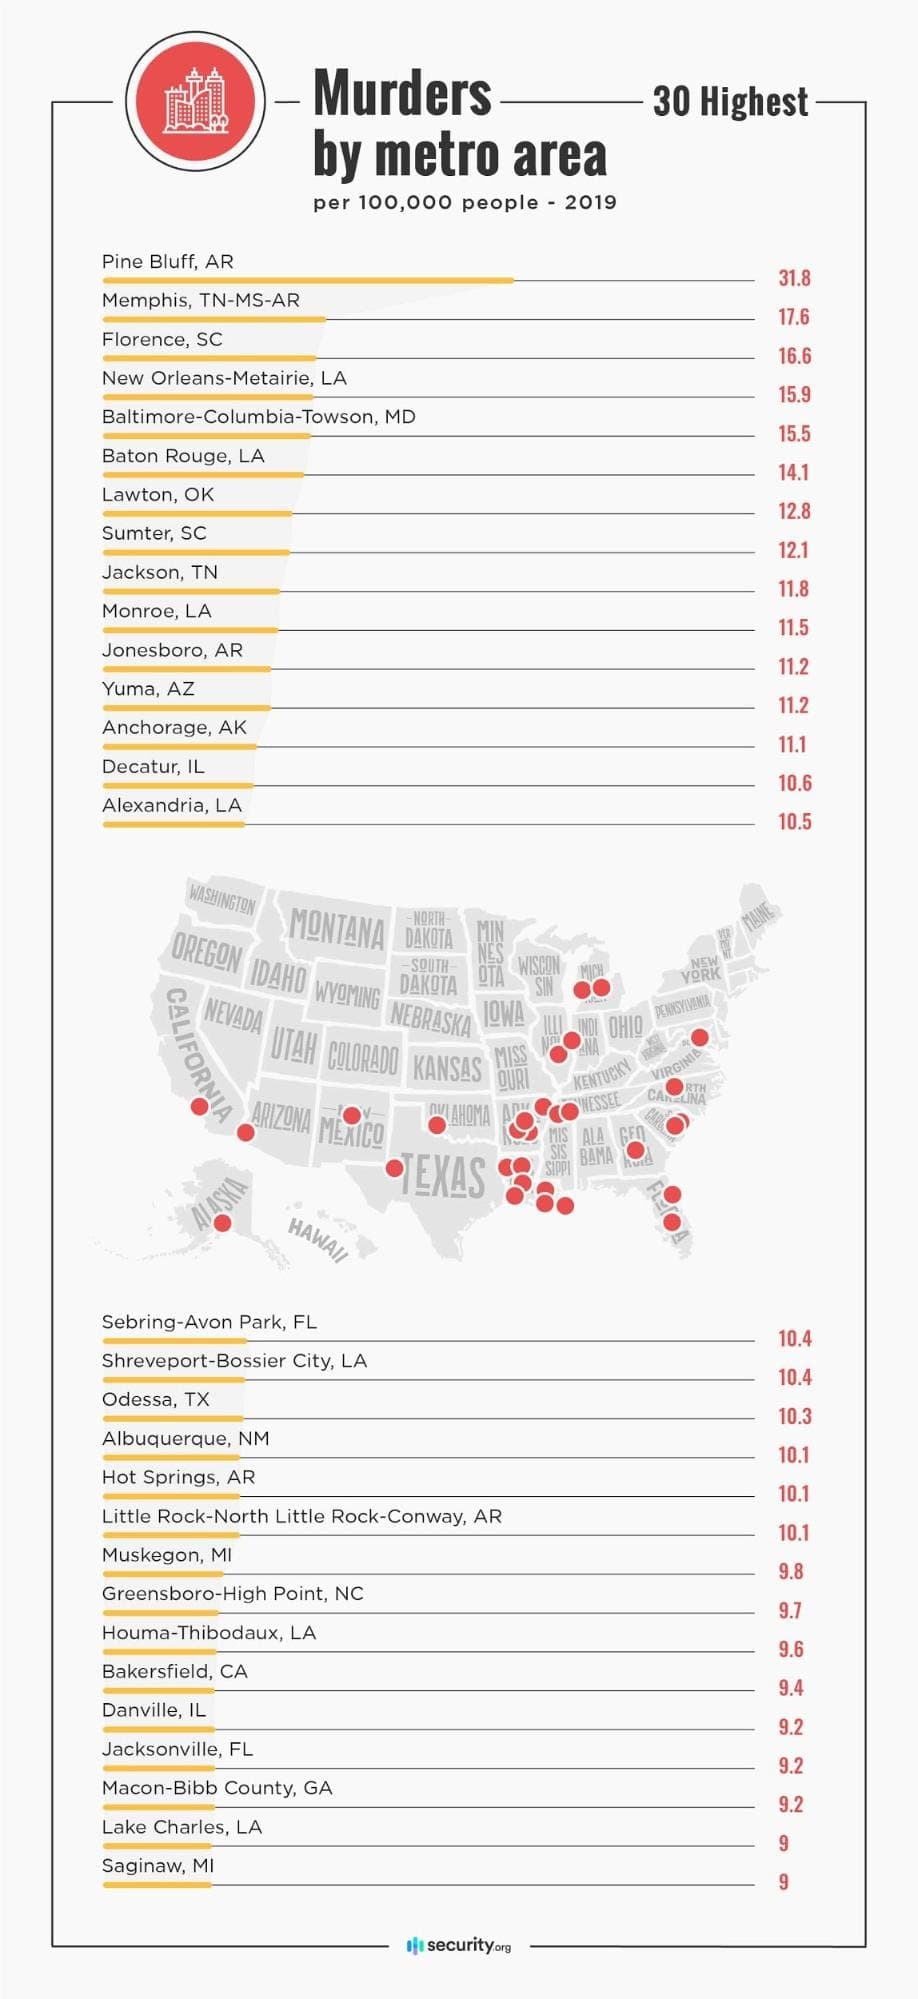 Top 30 murders by metro area per 100k people in 2019